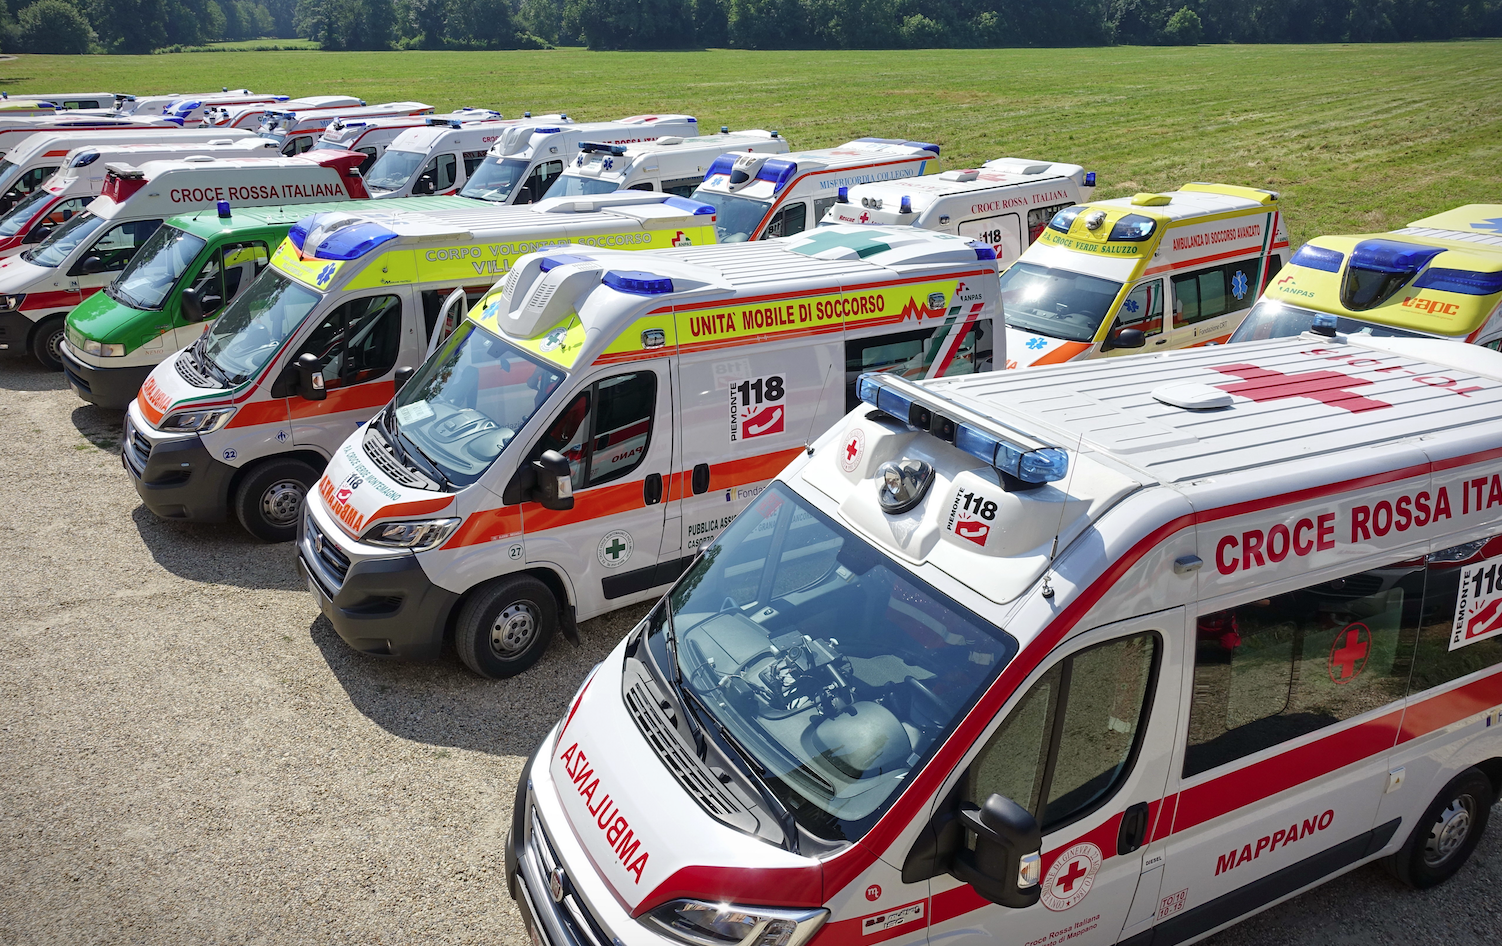 Fondazione Crt: una nuova ambulanza per la Croce rossa di Aosta